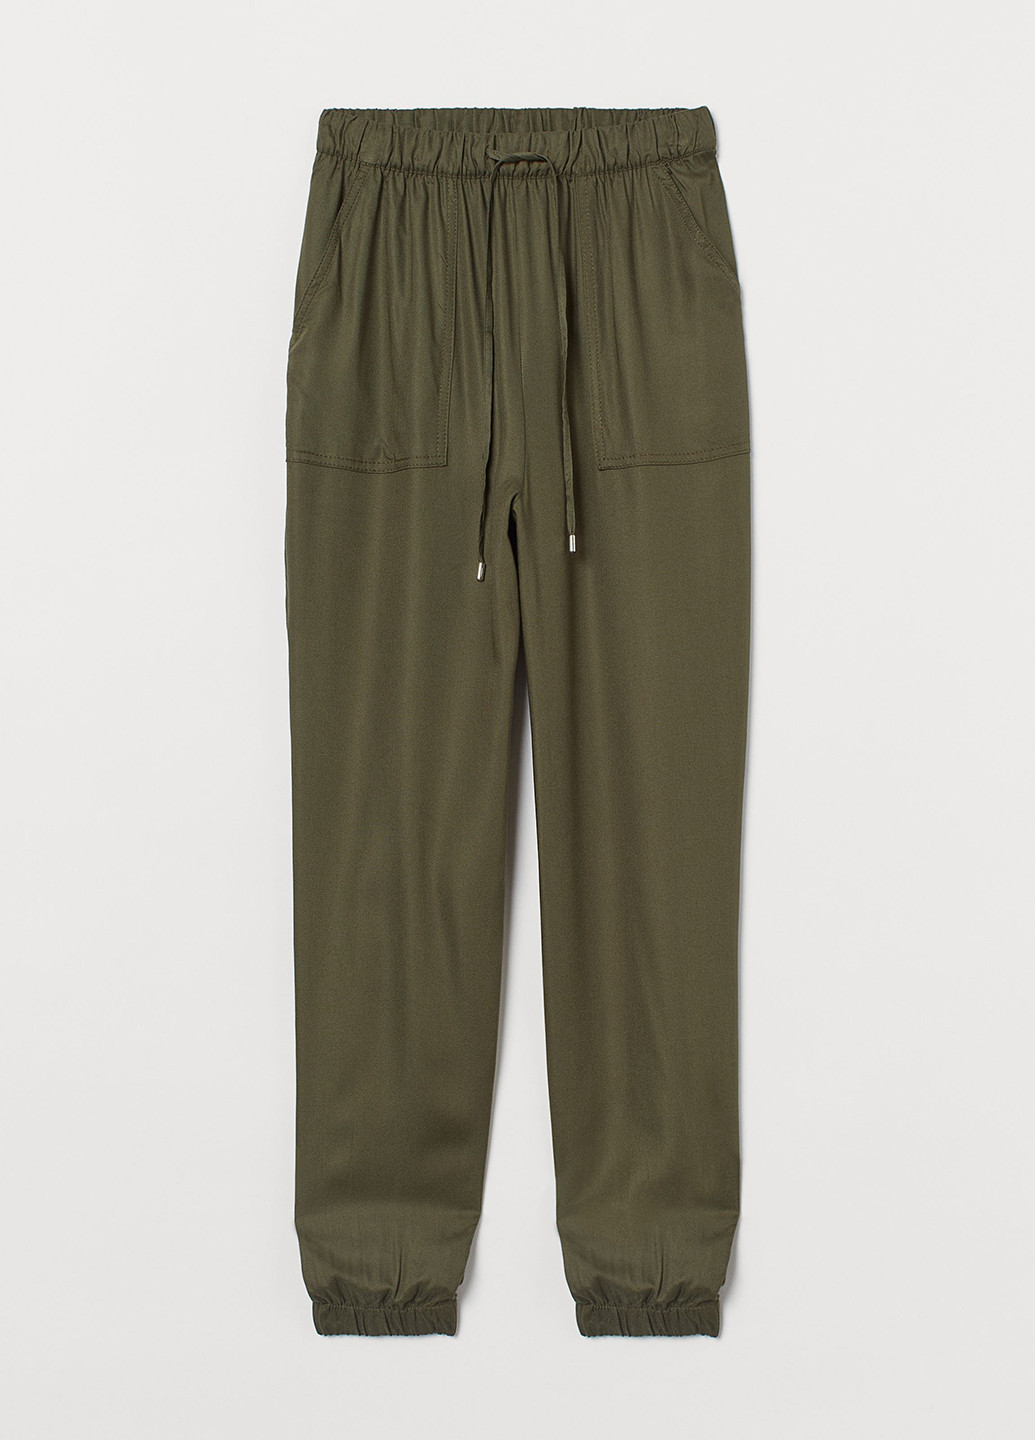 Хаки кэжуал летние джоггеры, укороченные брюки H&M